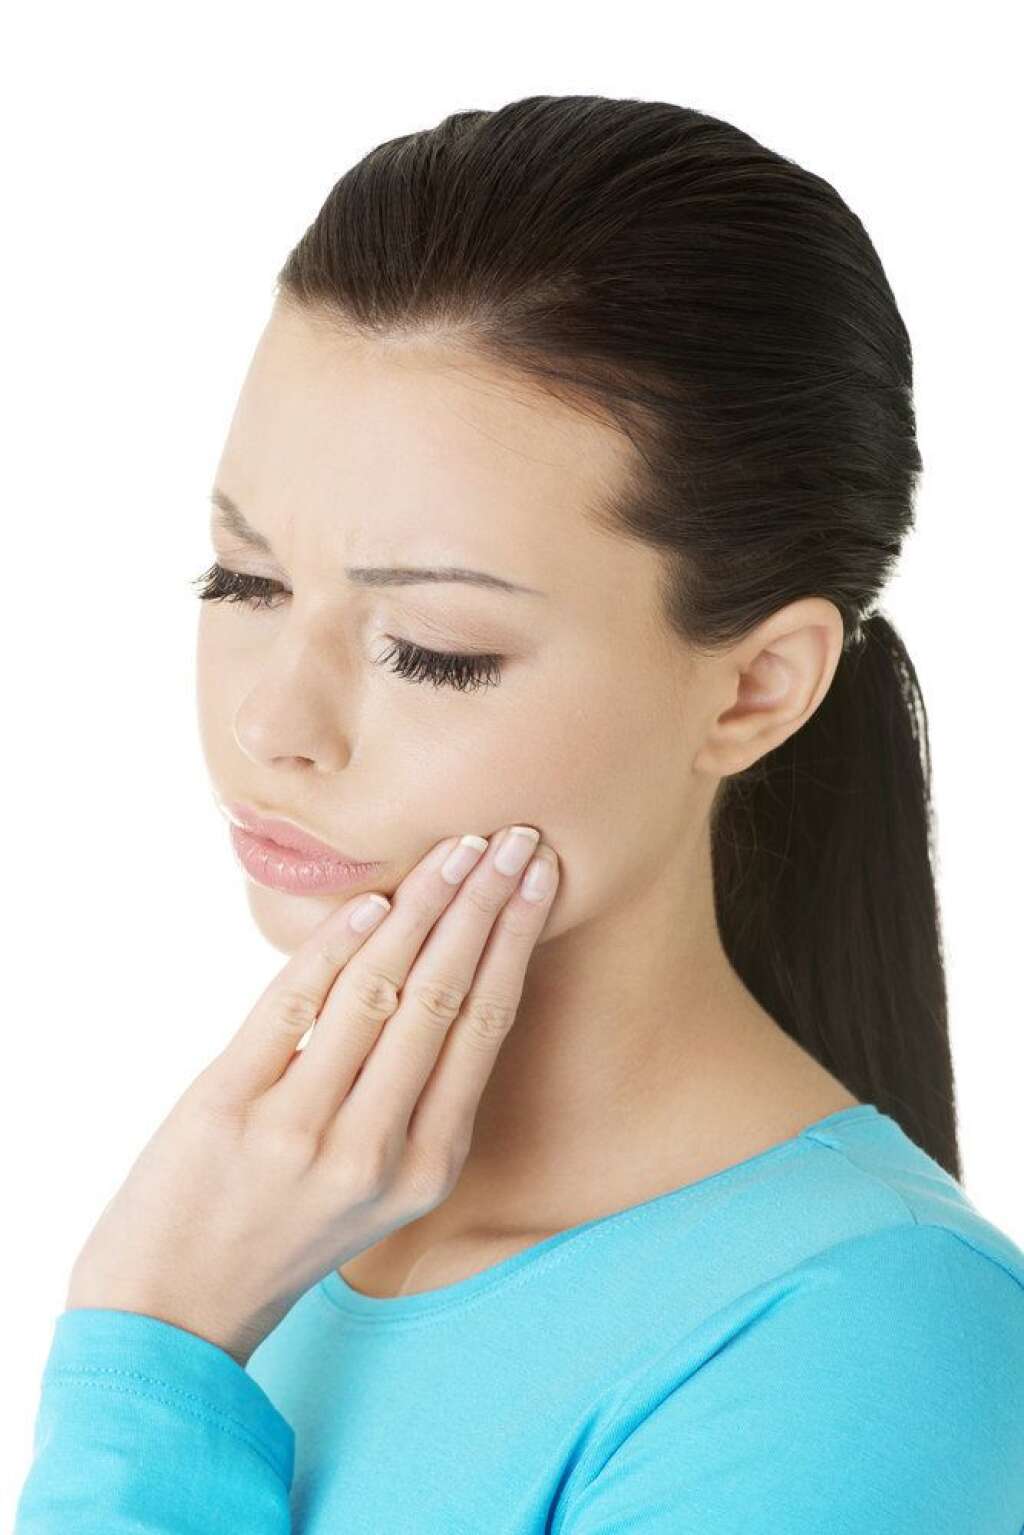 6- Soigner un mal de dents - <strong>Si une dent vous fait souffrir, il suffit d’appliquer de la glace sur le dos de votre main, plus précisément sur la partie qui forme un V entre votre pouce et votre index.</strong>  Une étude canadienne a montré que cette technique réduit la douleur de 50%. Le capteur nerveux à la base de ce "V" stimule une zone du cerveau qui bloque le signal de la douleur venant du visage et des mains.   C’est bien foutu le corps humain quand même.